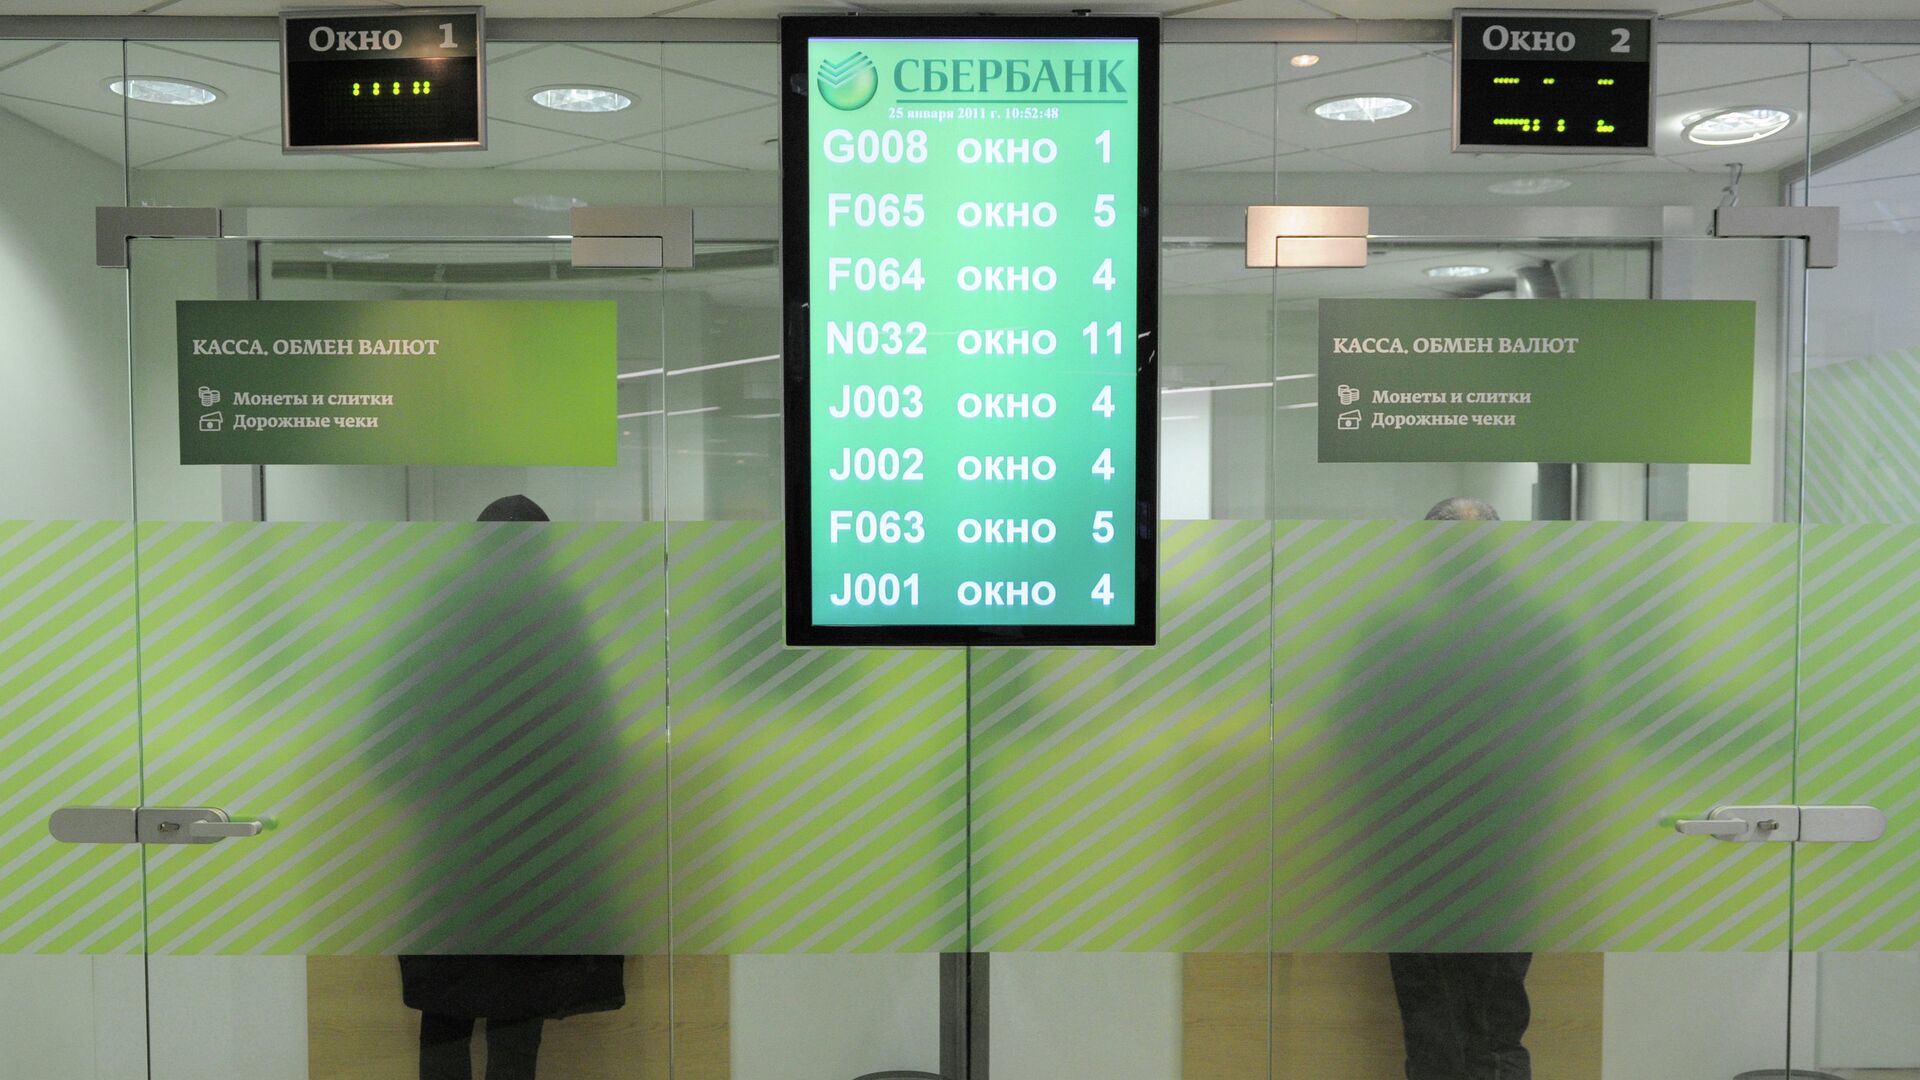 Сбербанк с обменом валюты в москве криптовалюта запрещена